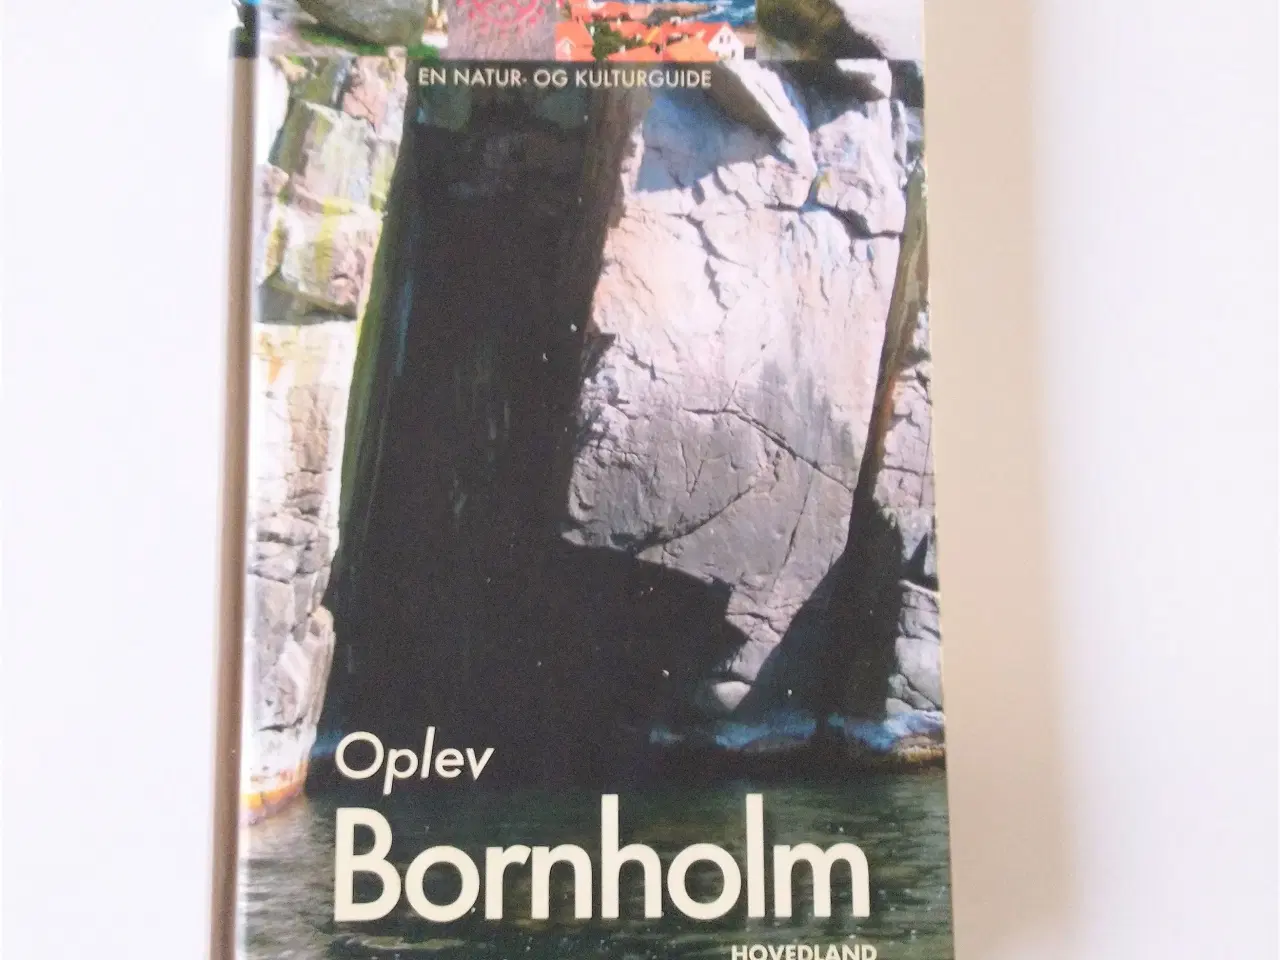 Billede 1 - Oplev Bornholm, en natur- og kulturguide